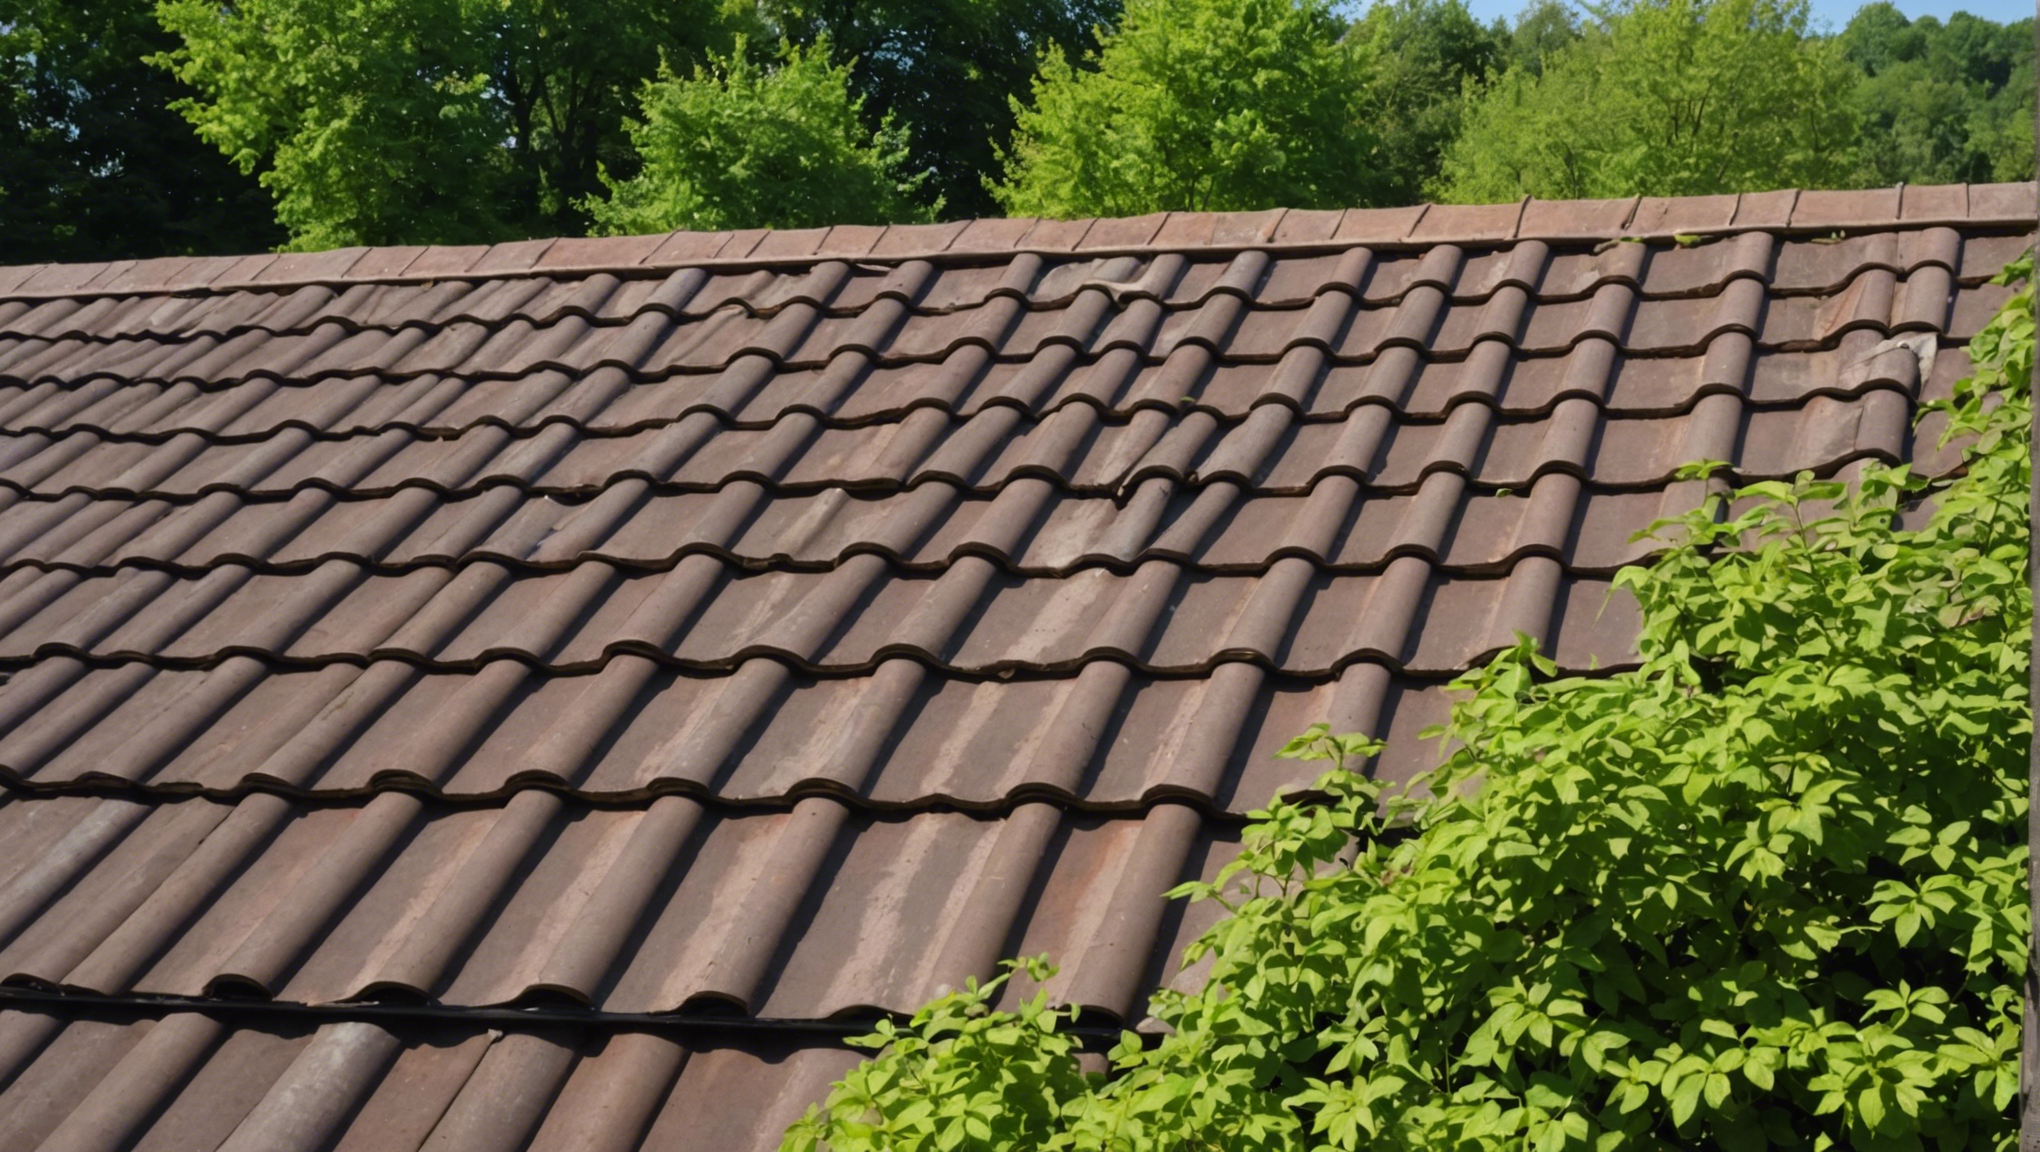 découvrez les avantages de la toiture végétalisée et laissez-vous inspirer par la beauté naturelle des toits verts pour votre habitation ou bâtiment.